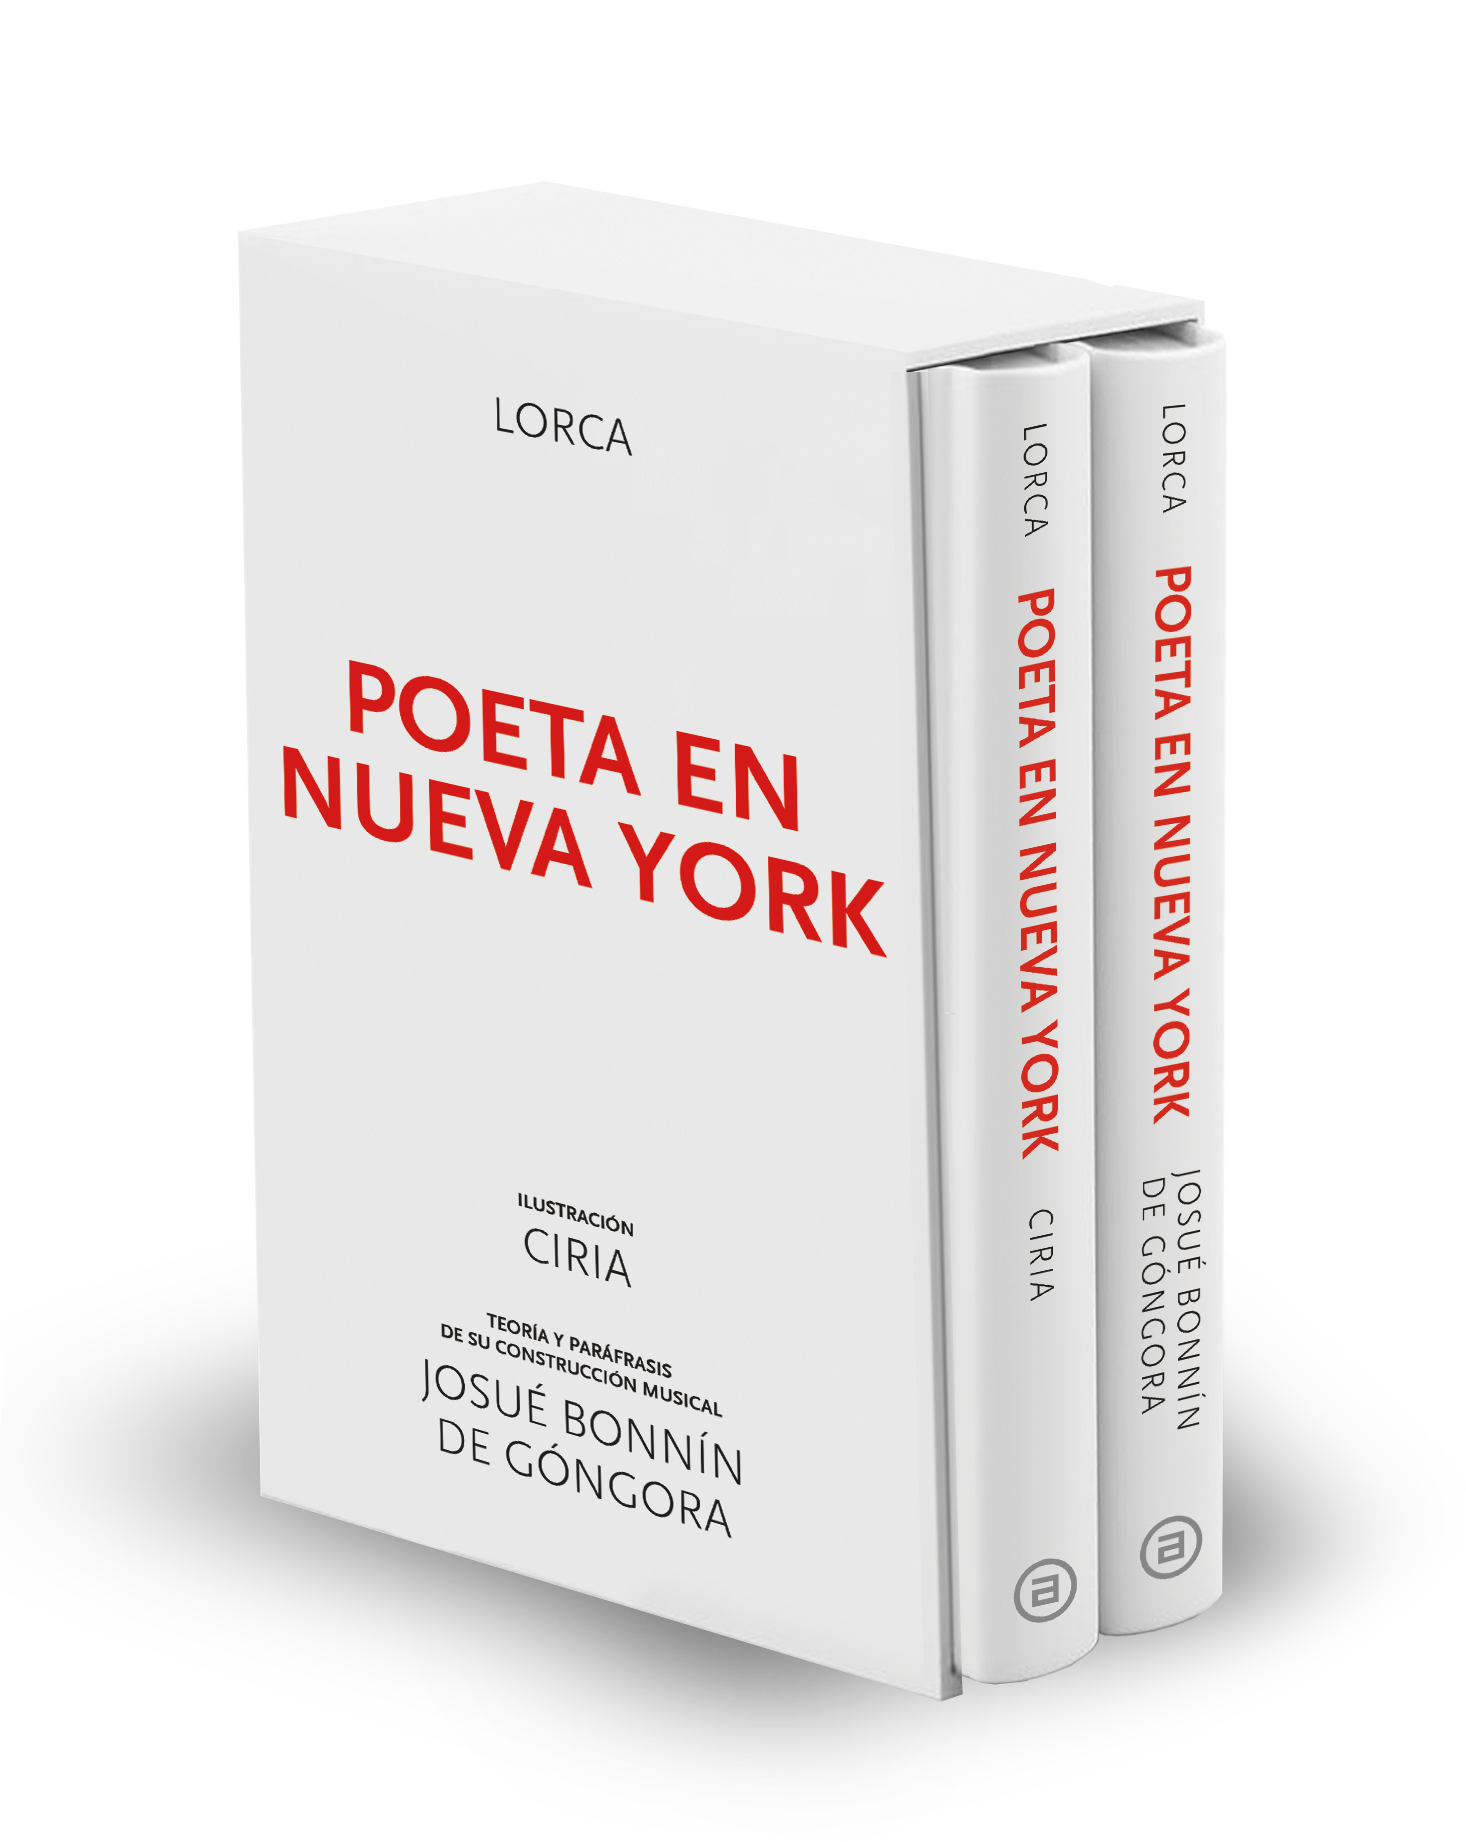 POETA EN NUEVA YORK - Federico García Lorca | Josué Bonnín De Góngora